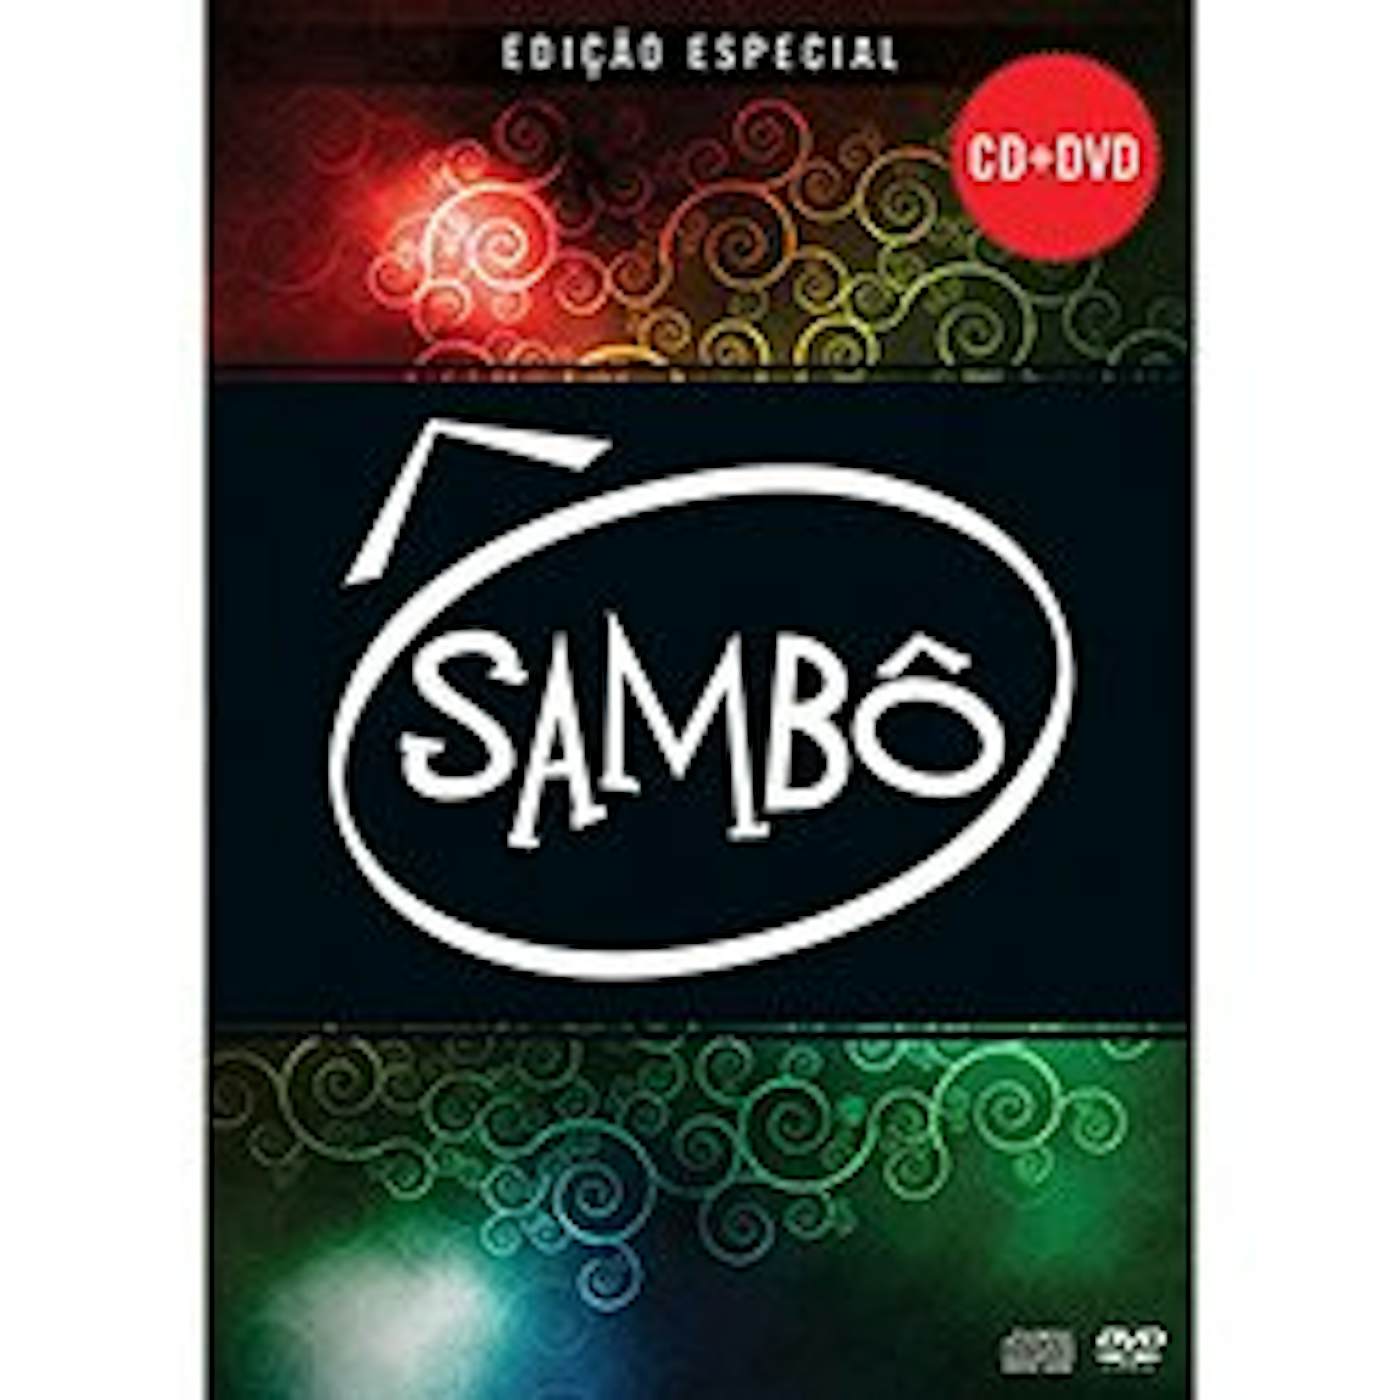 SAMBO CD